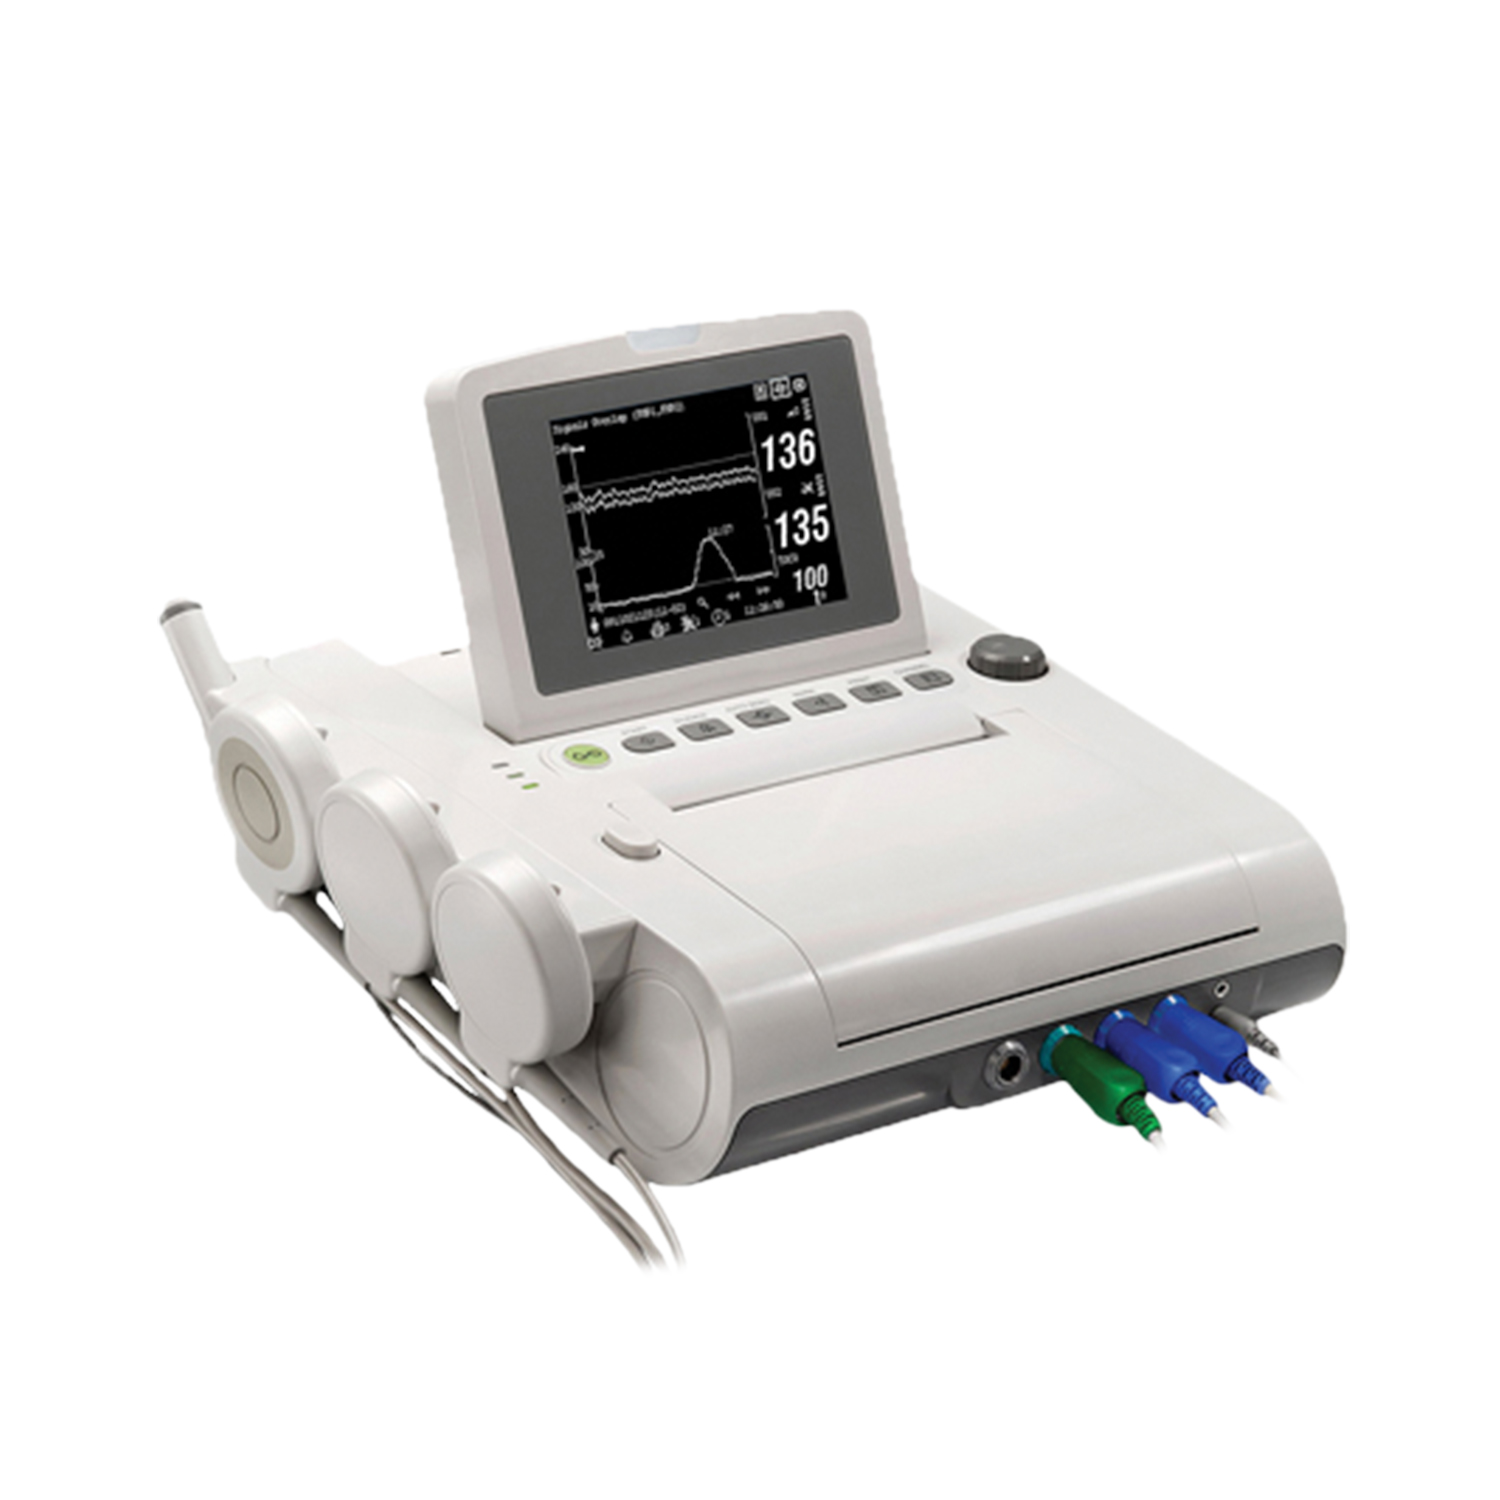 Avante Compact II Fetal Monitor